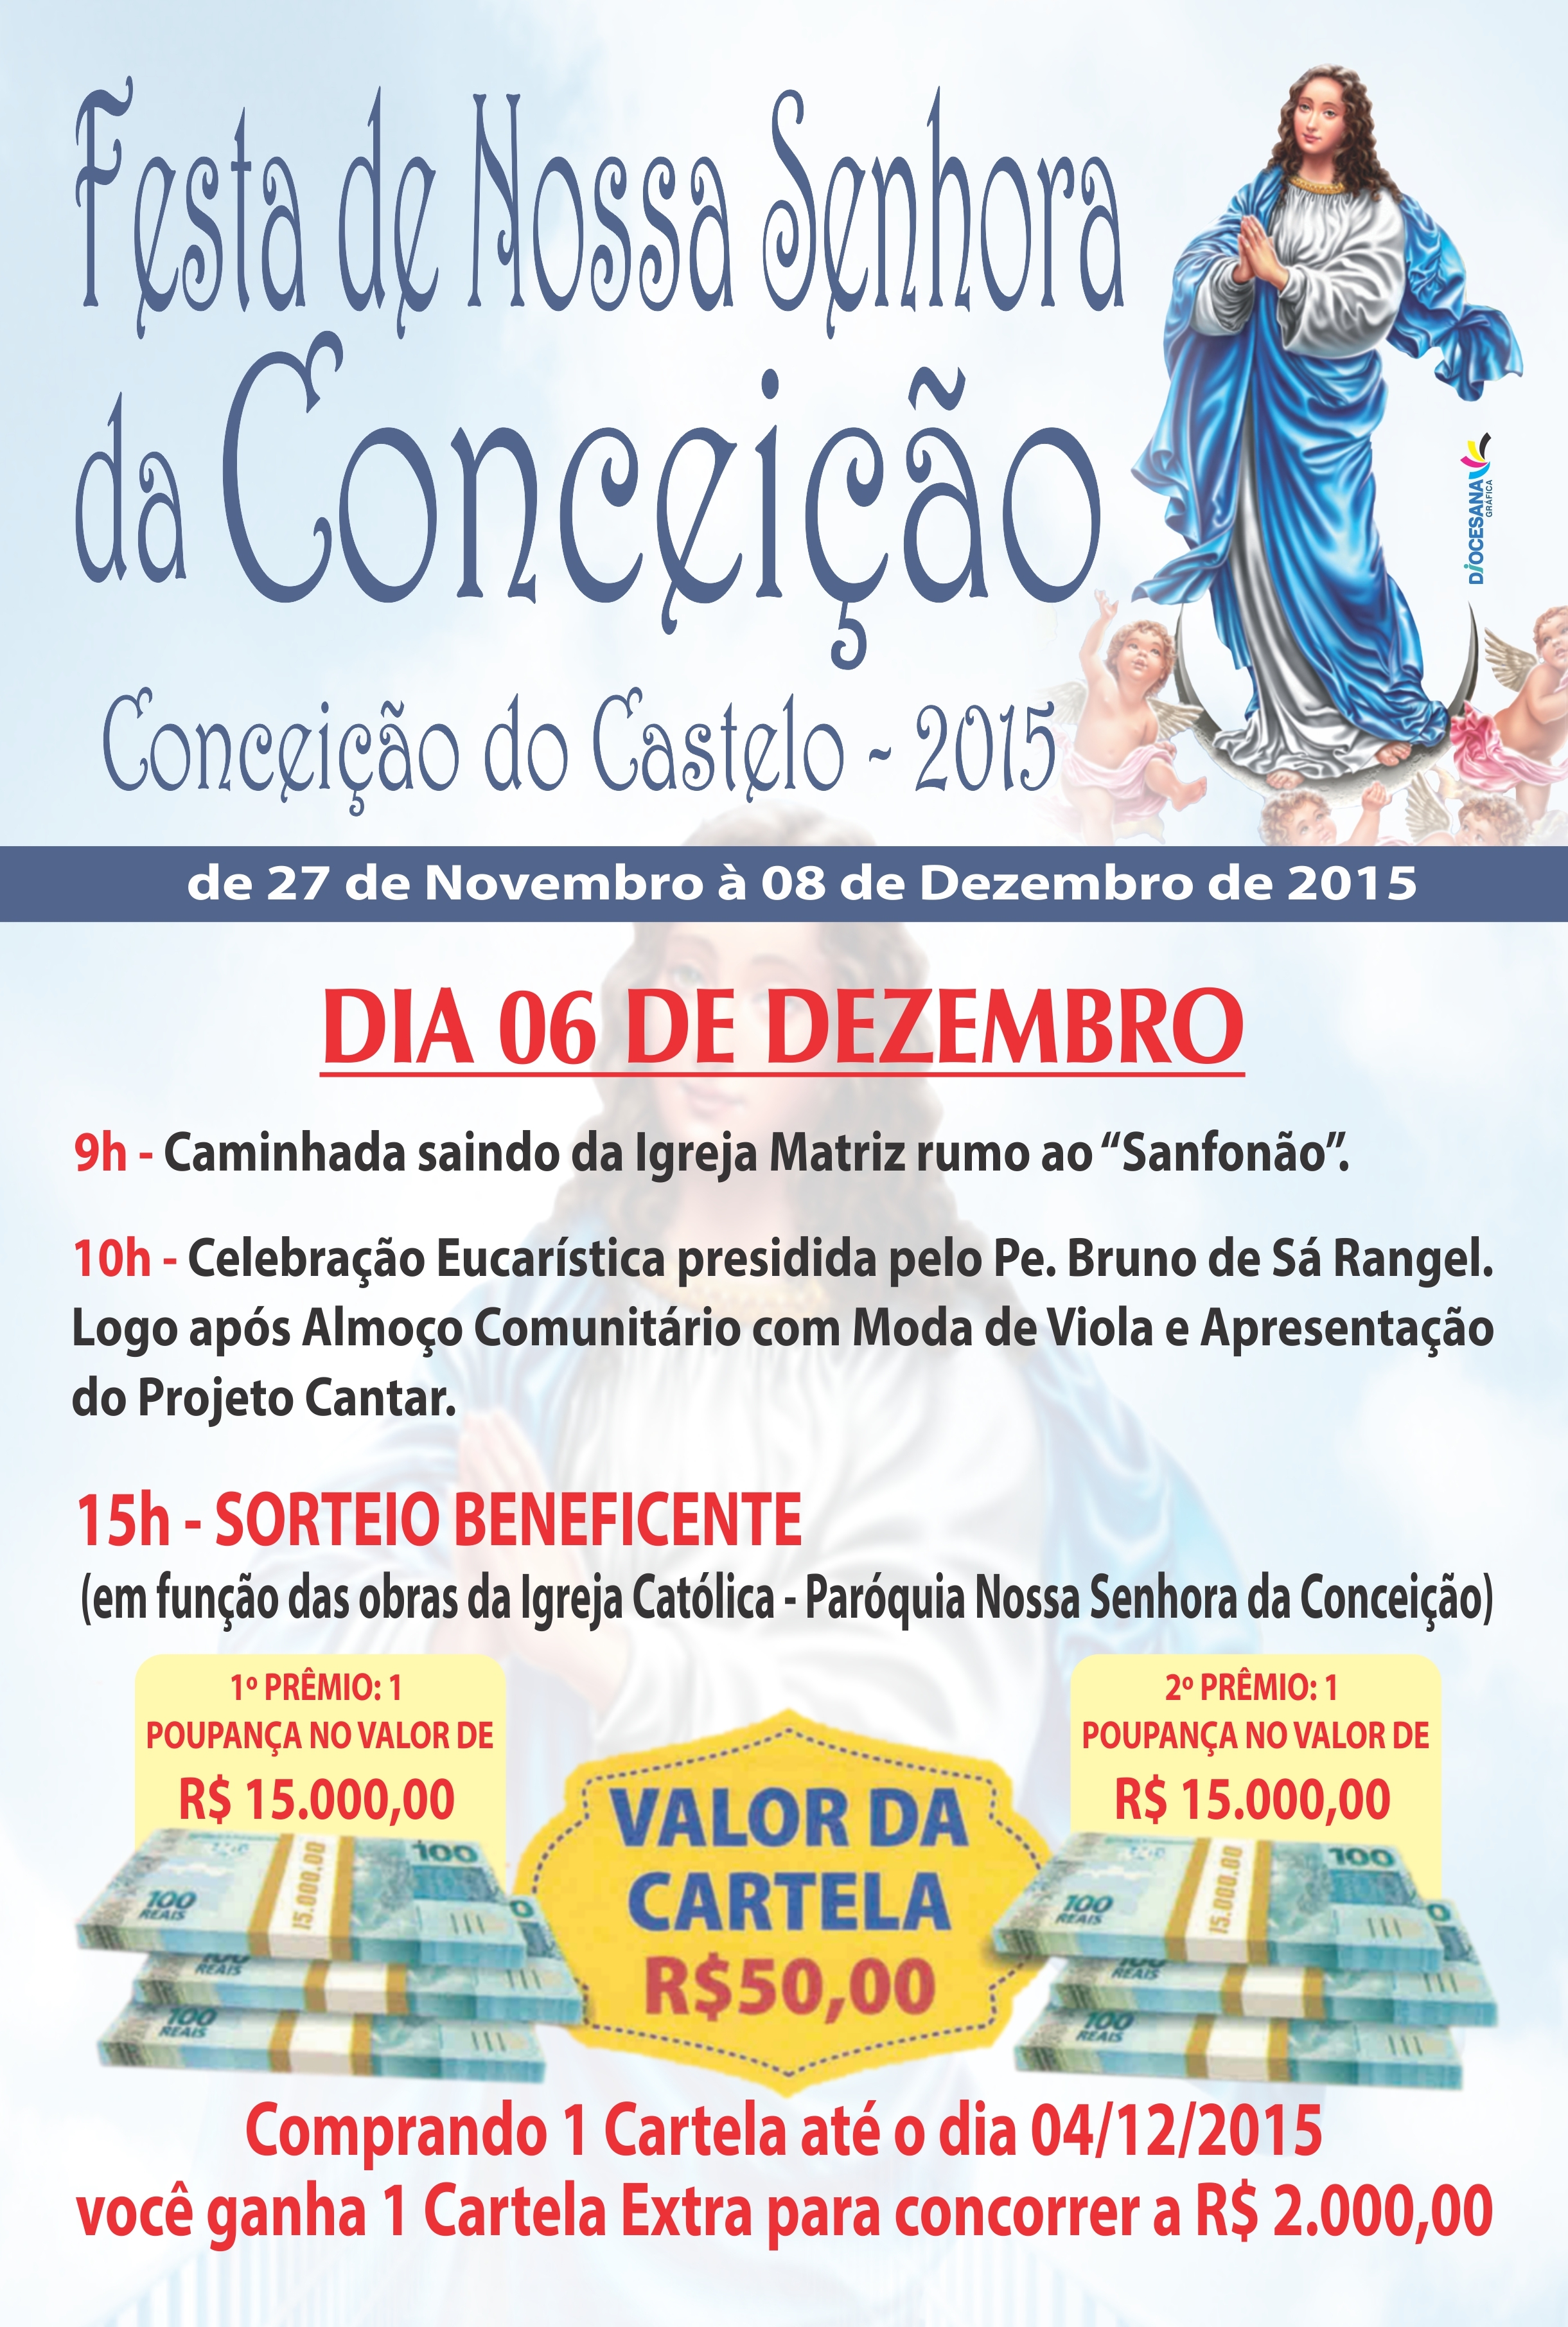 Festa da Padroeira Nossa Senhora da Conceição começa no dia 27 de novembro